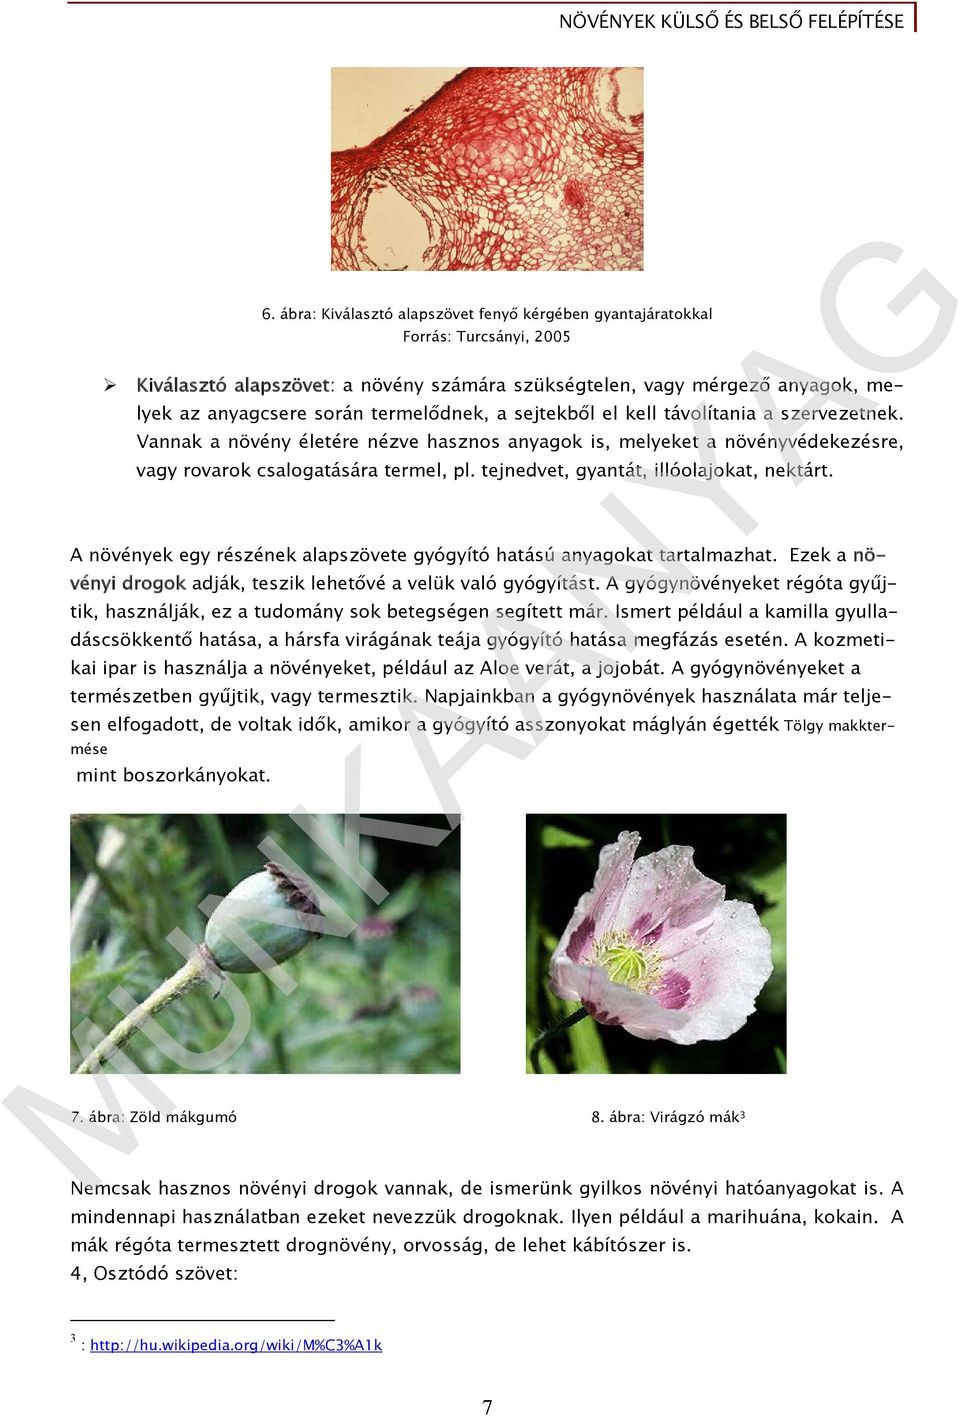 Növények külső és belső felépítése - PDF Ingyenes letöltés